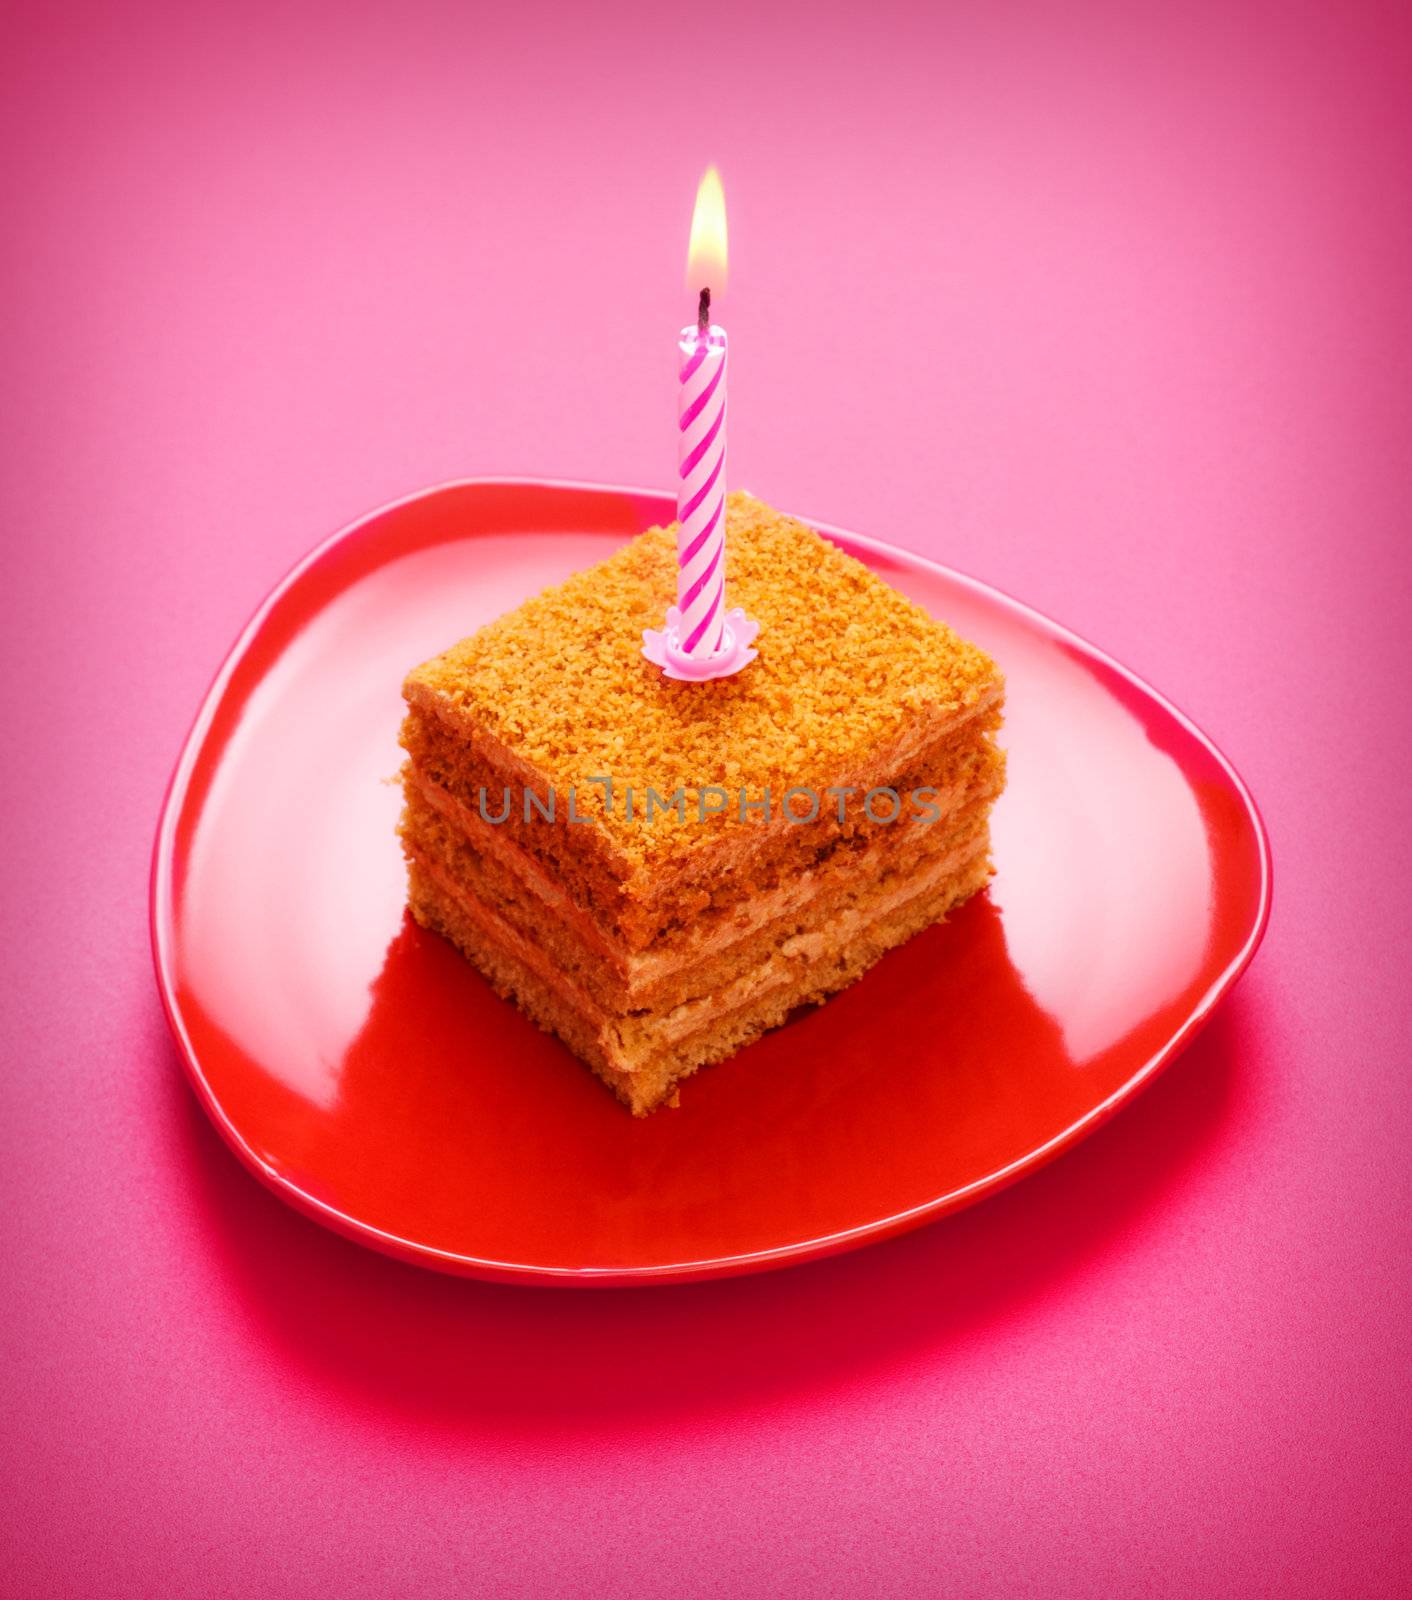 Birthday Cake by petr_malyshev